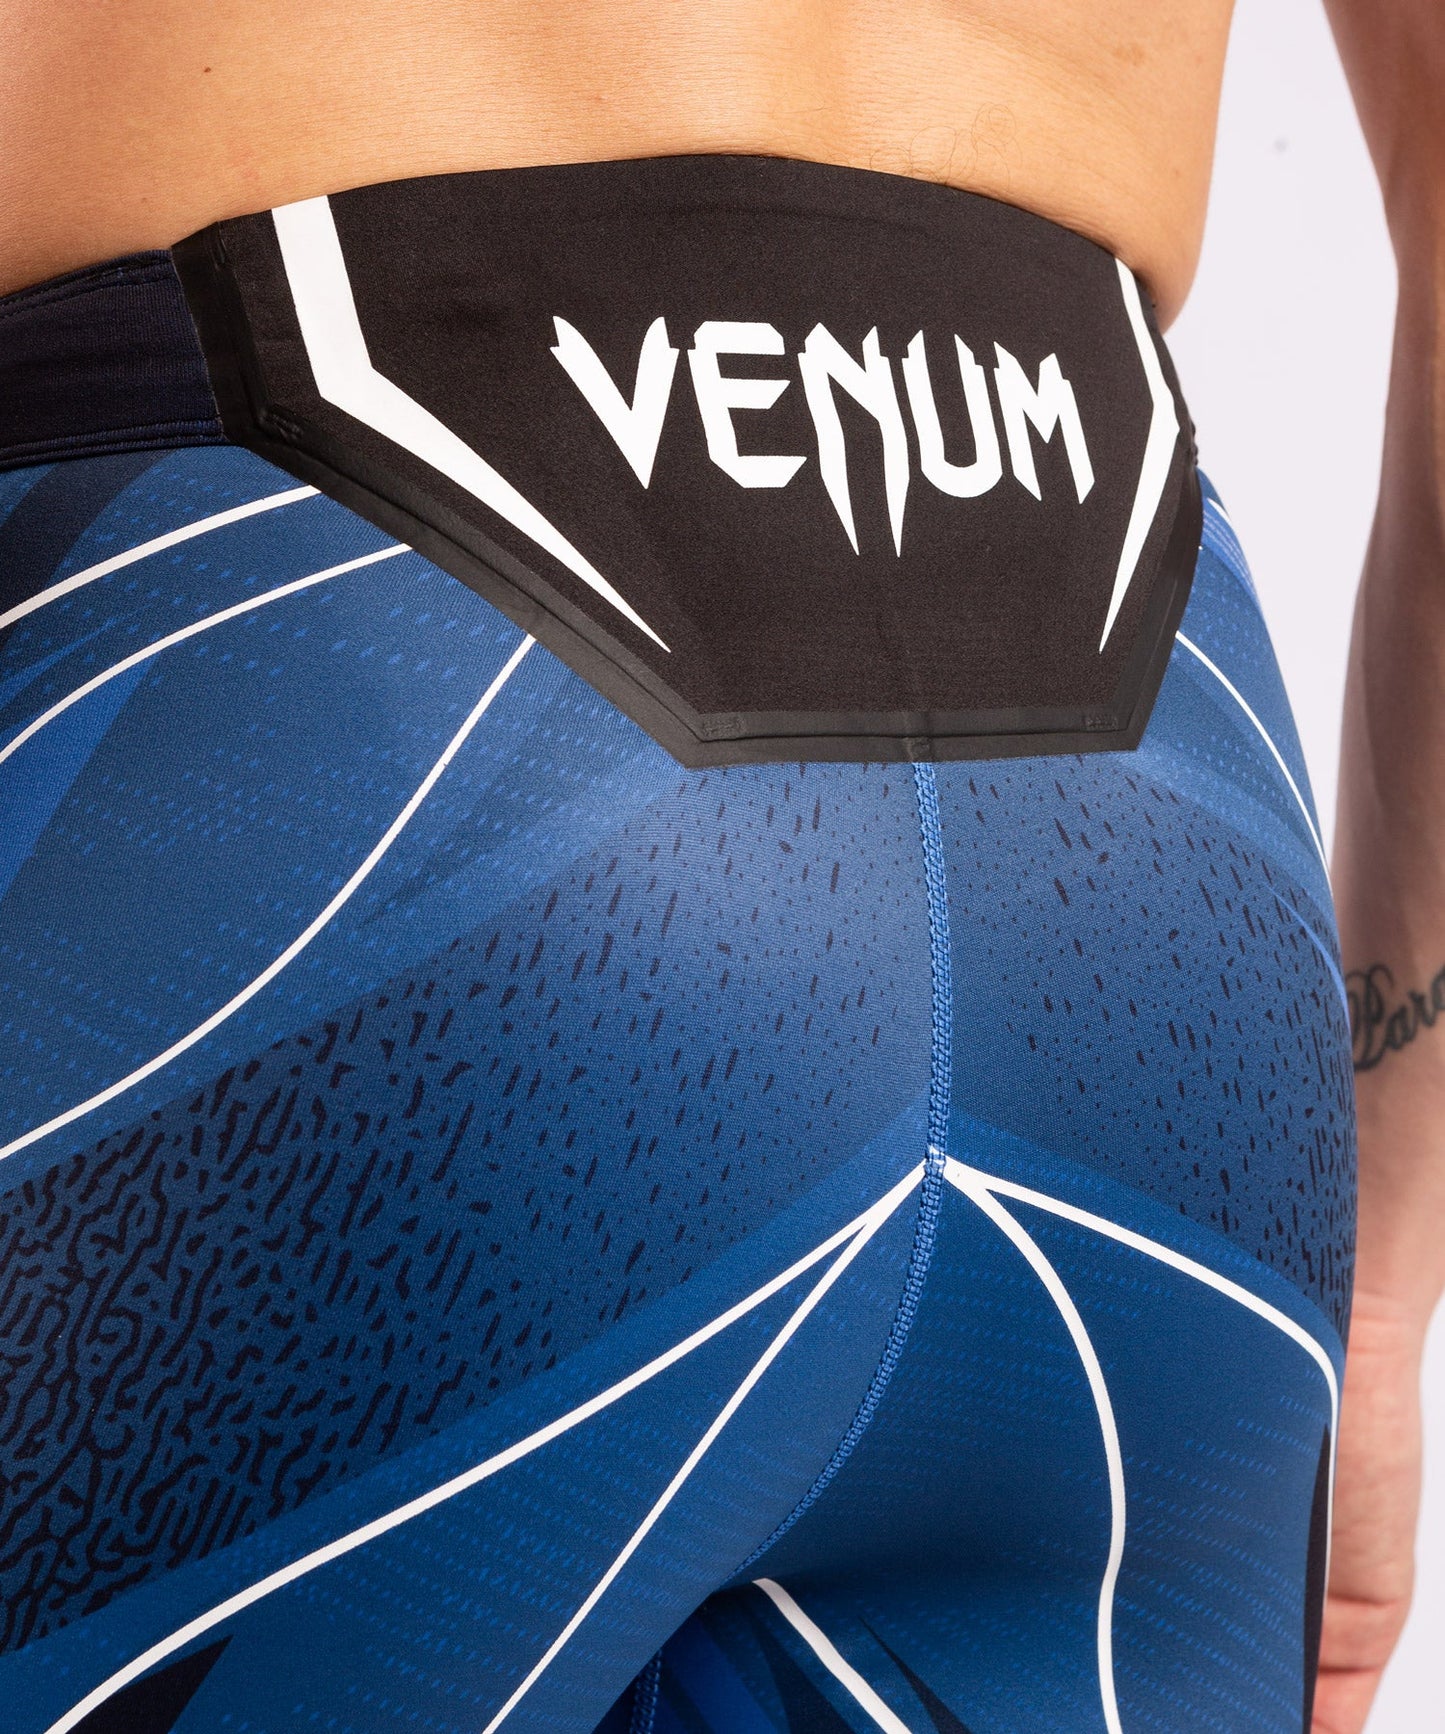 UFC Venum Authentic Fight Night Men's Vale Tudo Shorts - Long Fit - Blue